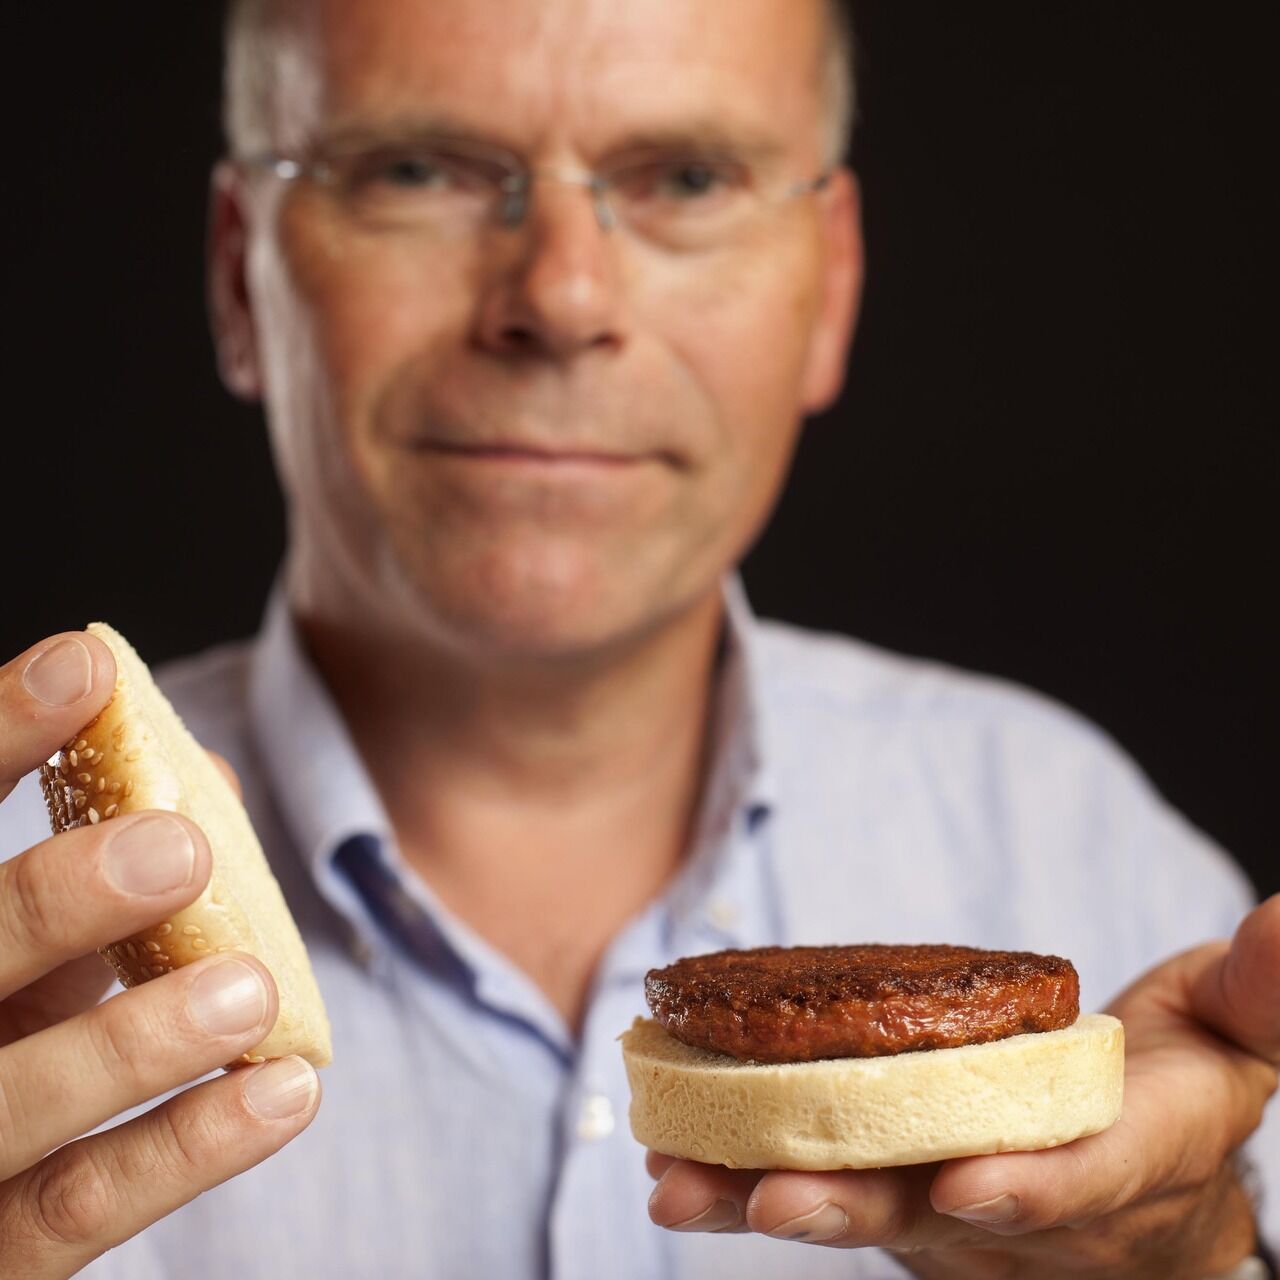 Культивоване м’ясо: Марк Пост, «батько» культивованого м’яса, показує світові перший гамбургер, вироблений за допомогою клітинного сільського господарства